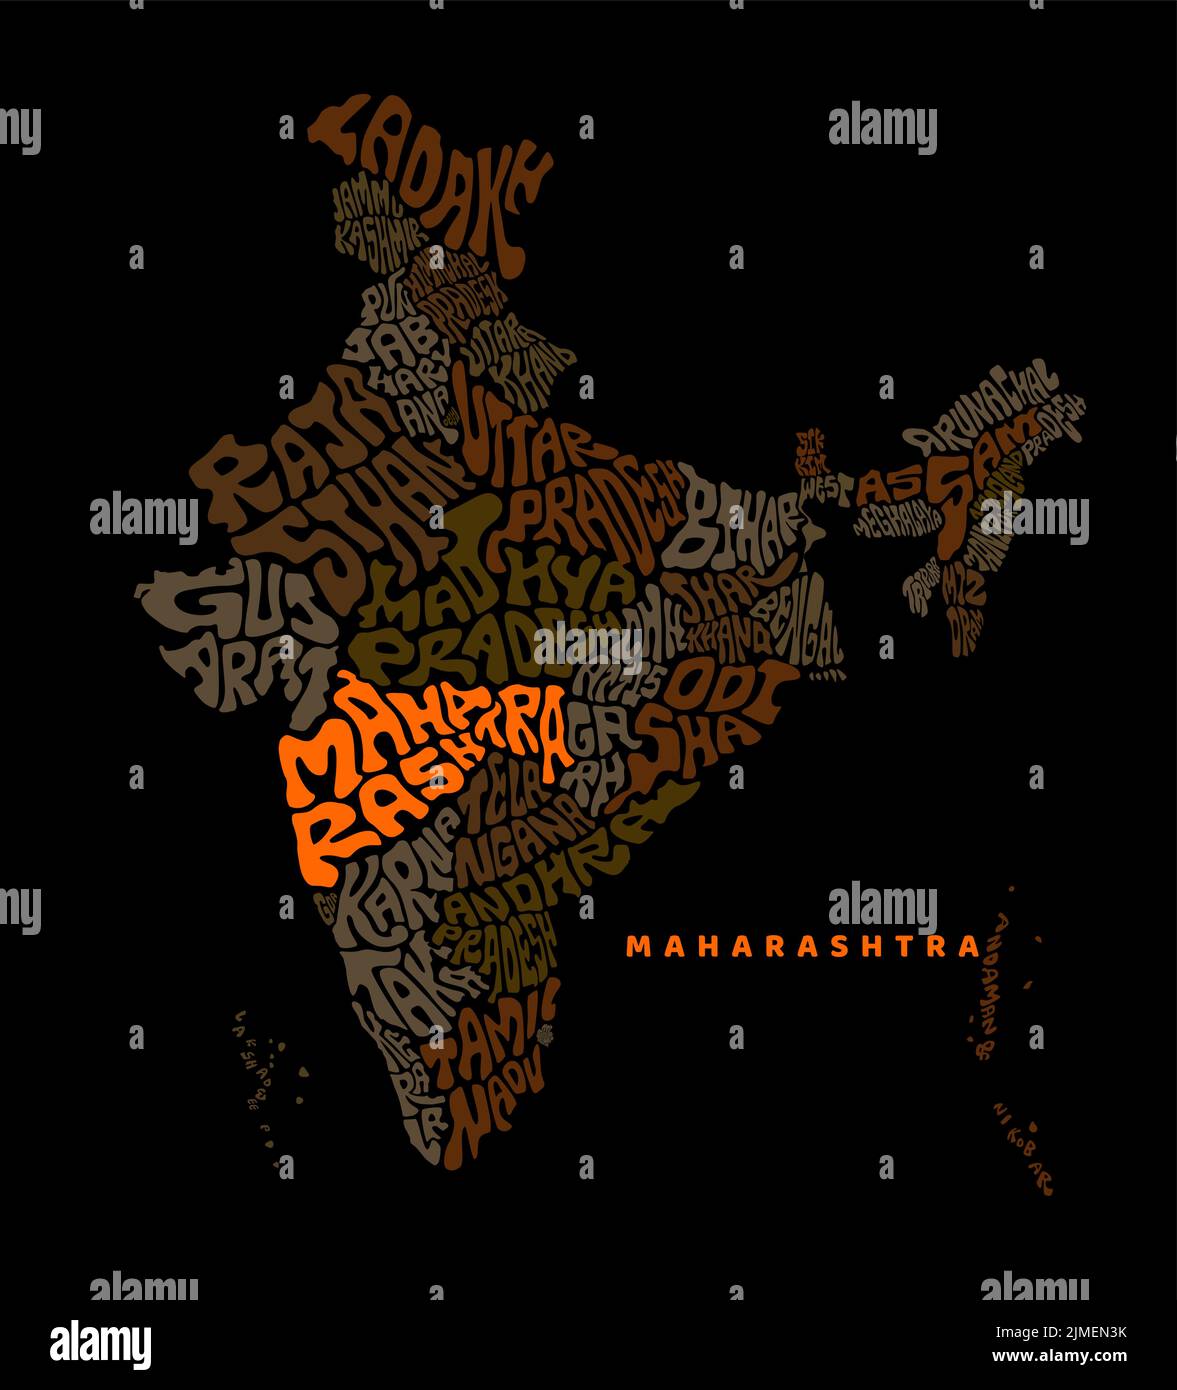 Scrittura della mappa Maharashtra con l'India. Scritta India Map con prominente mappa Maharashtra. Illustrazione Vettoriale